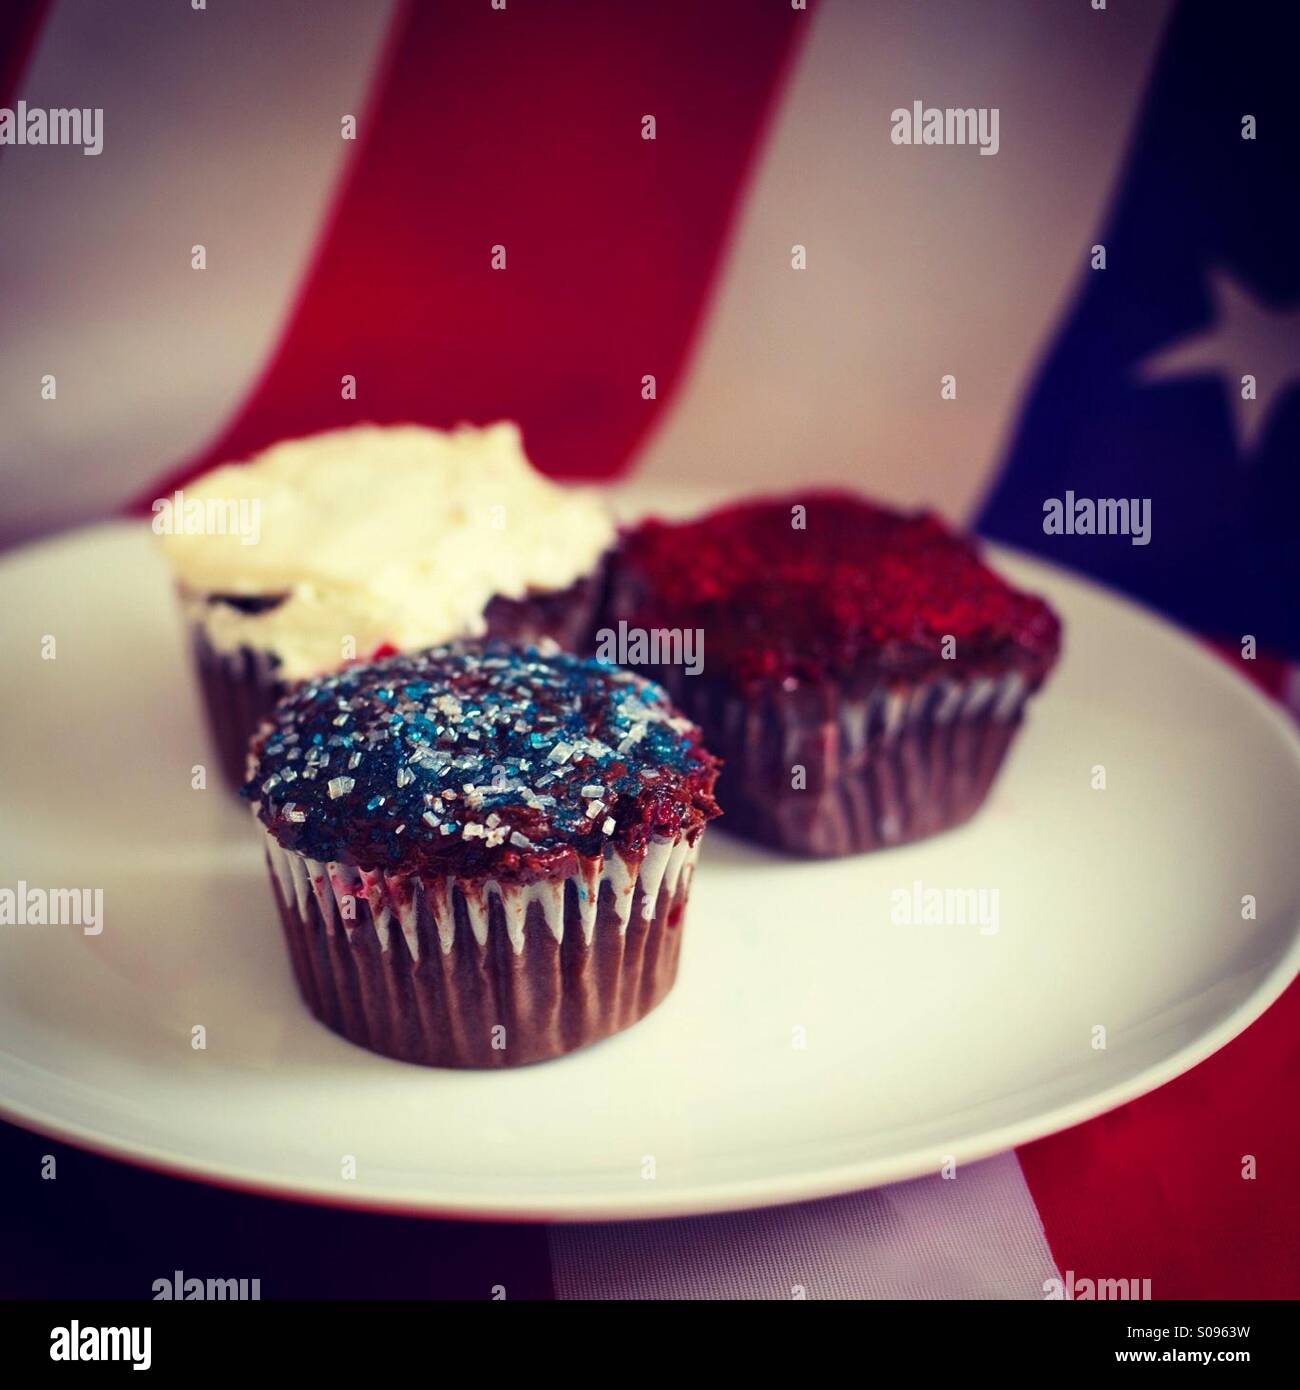 Rouge, blanc et bleu de petits gâteaux au chocolat avec un drapeau américain background Banque D'Images